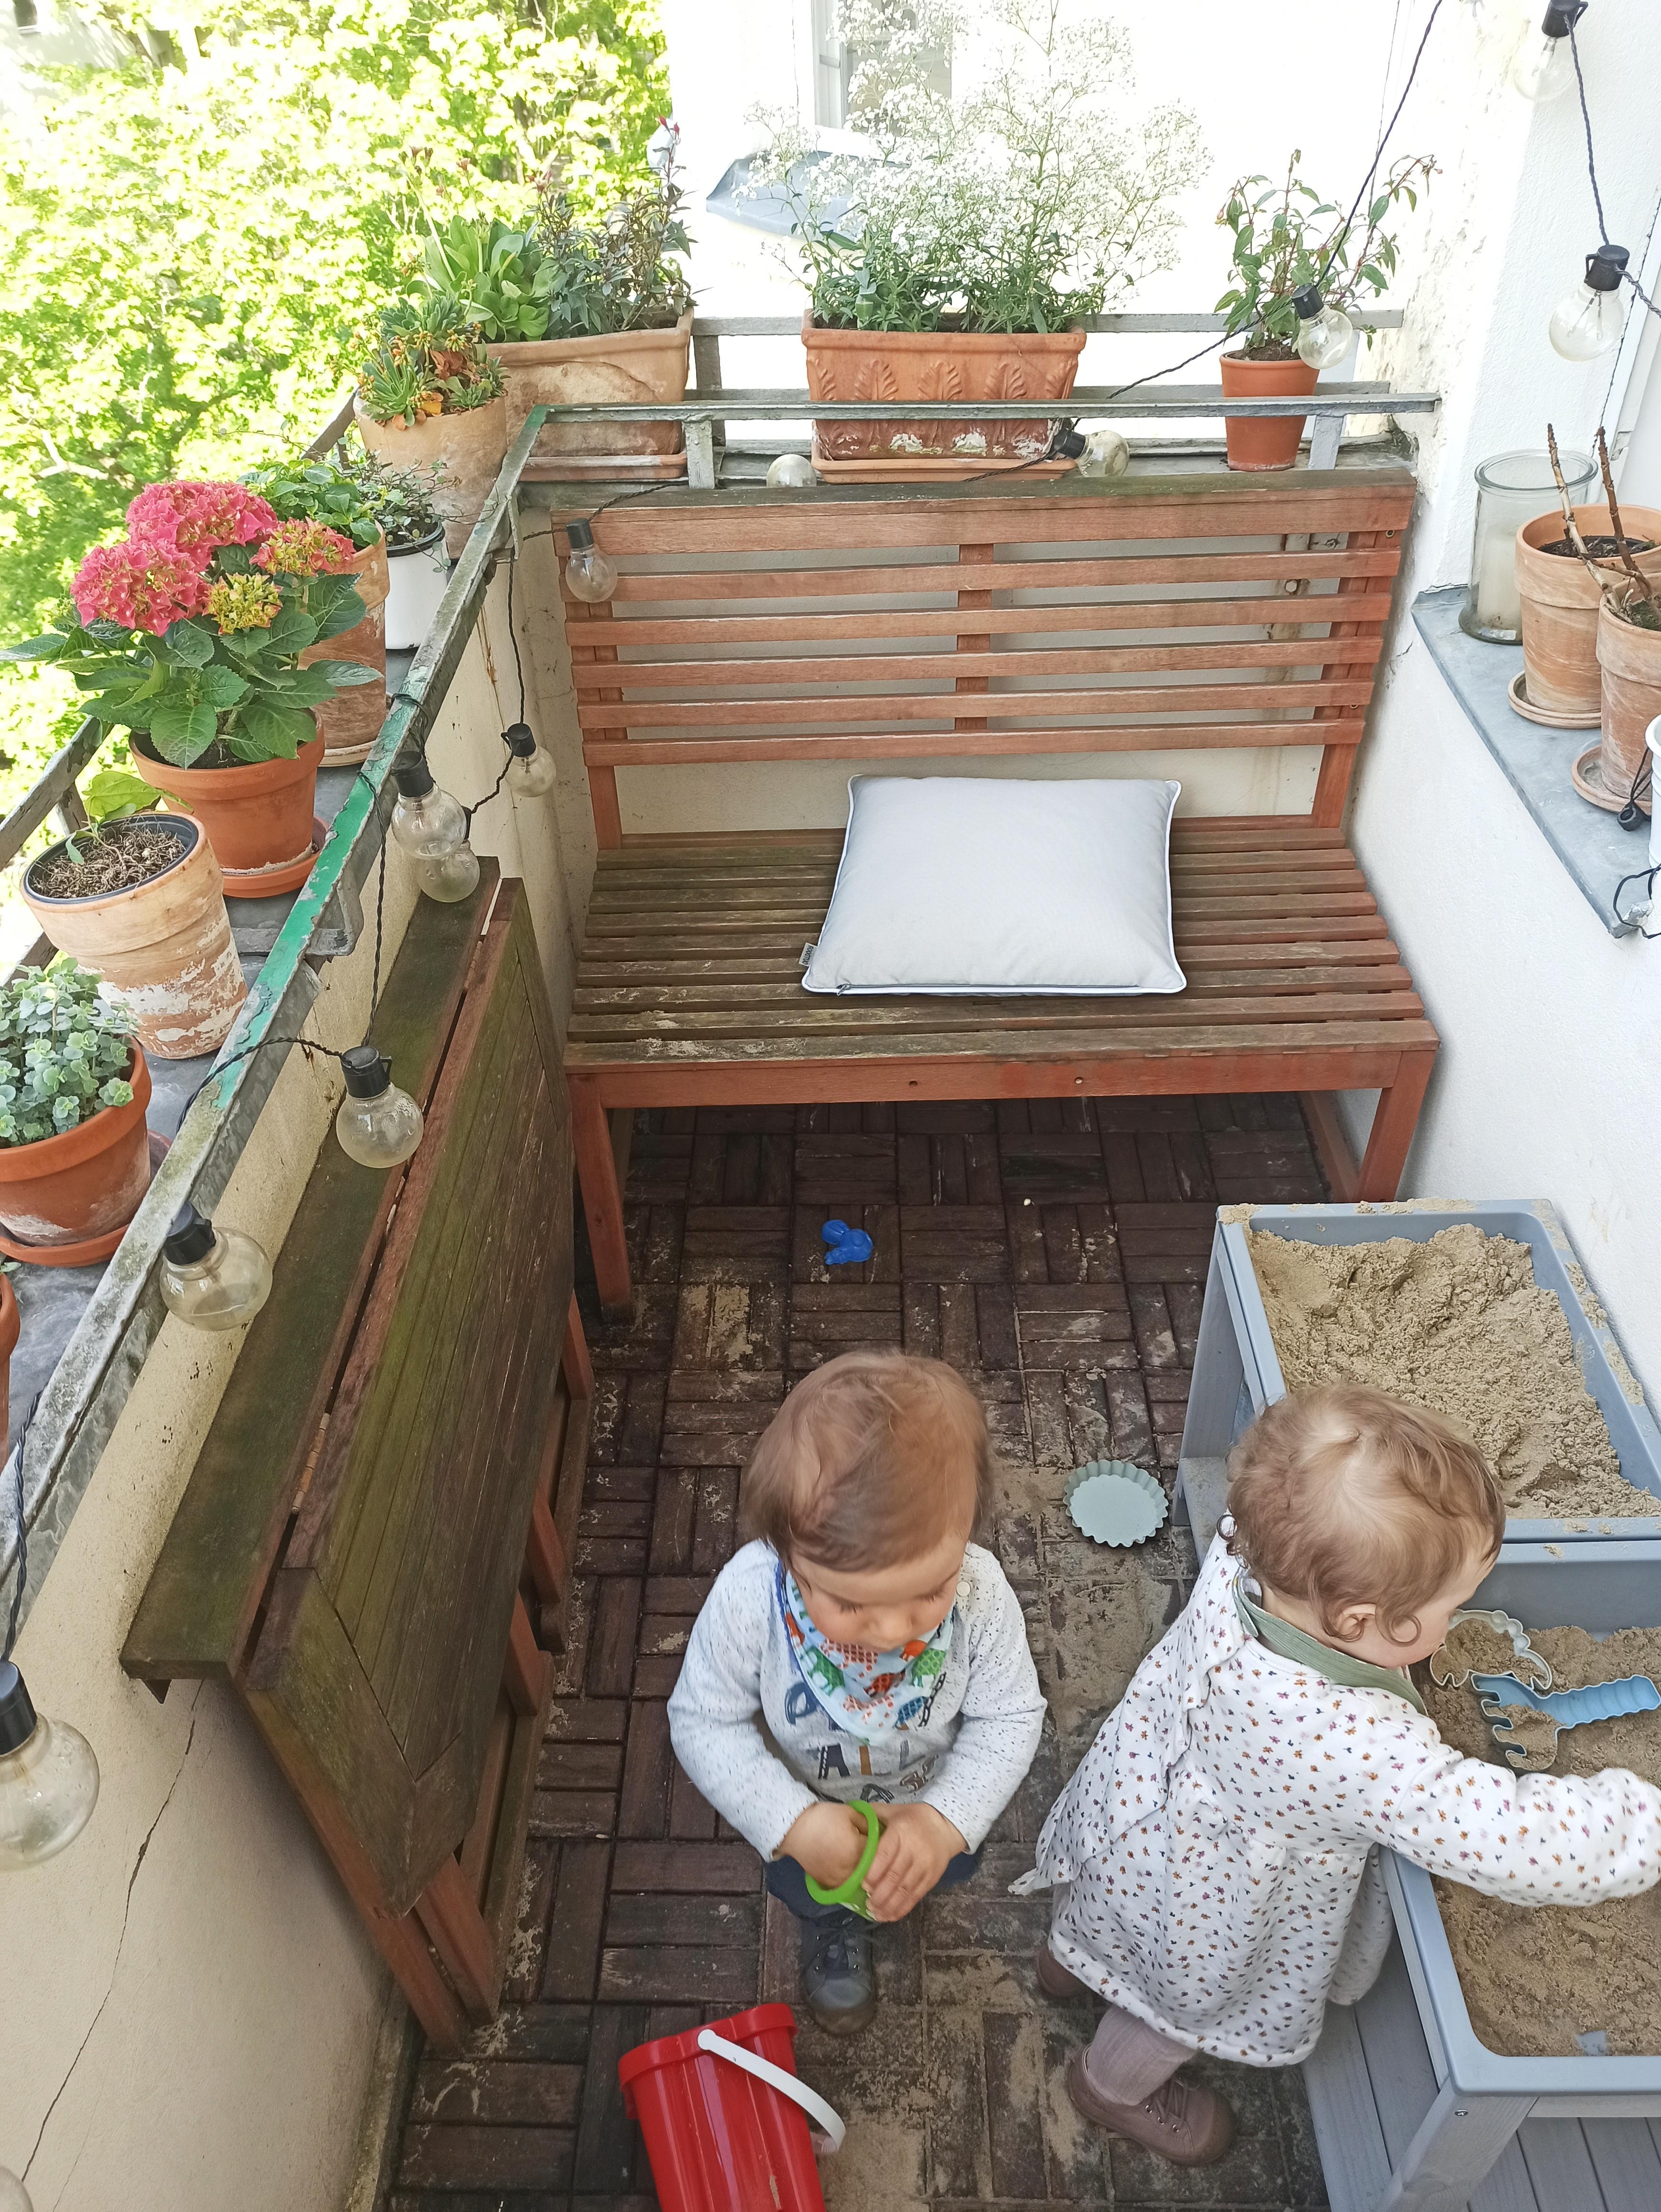 Und so sieht das dann aus, wenn man mit Zwillingen versucht, das Beste aus kleinstem Raum zu machen 😄 #balkon